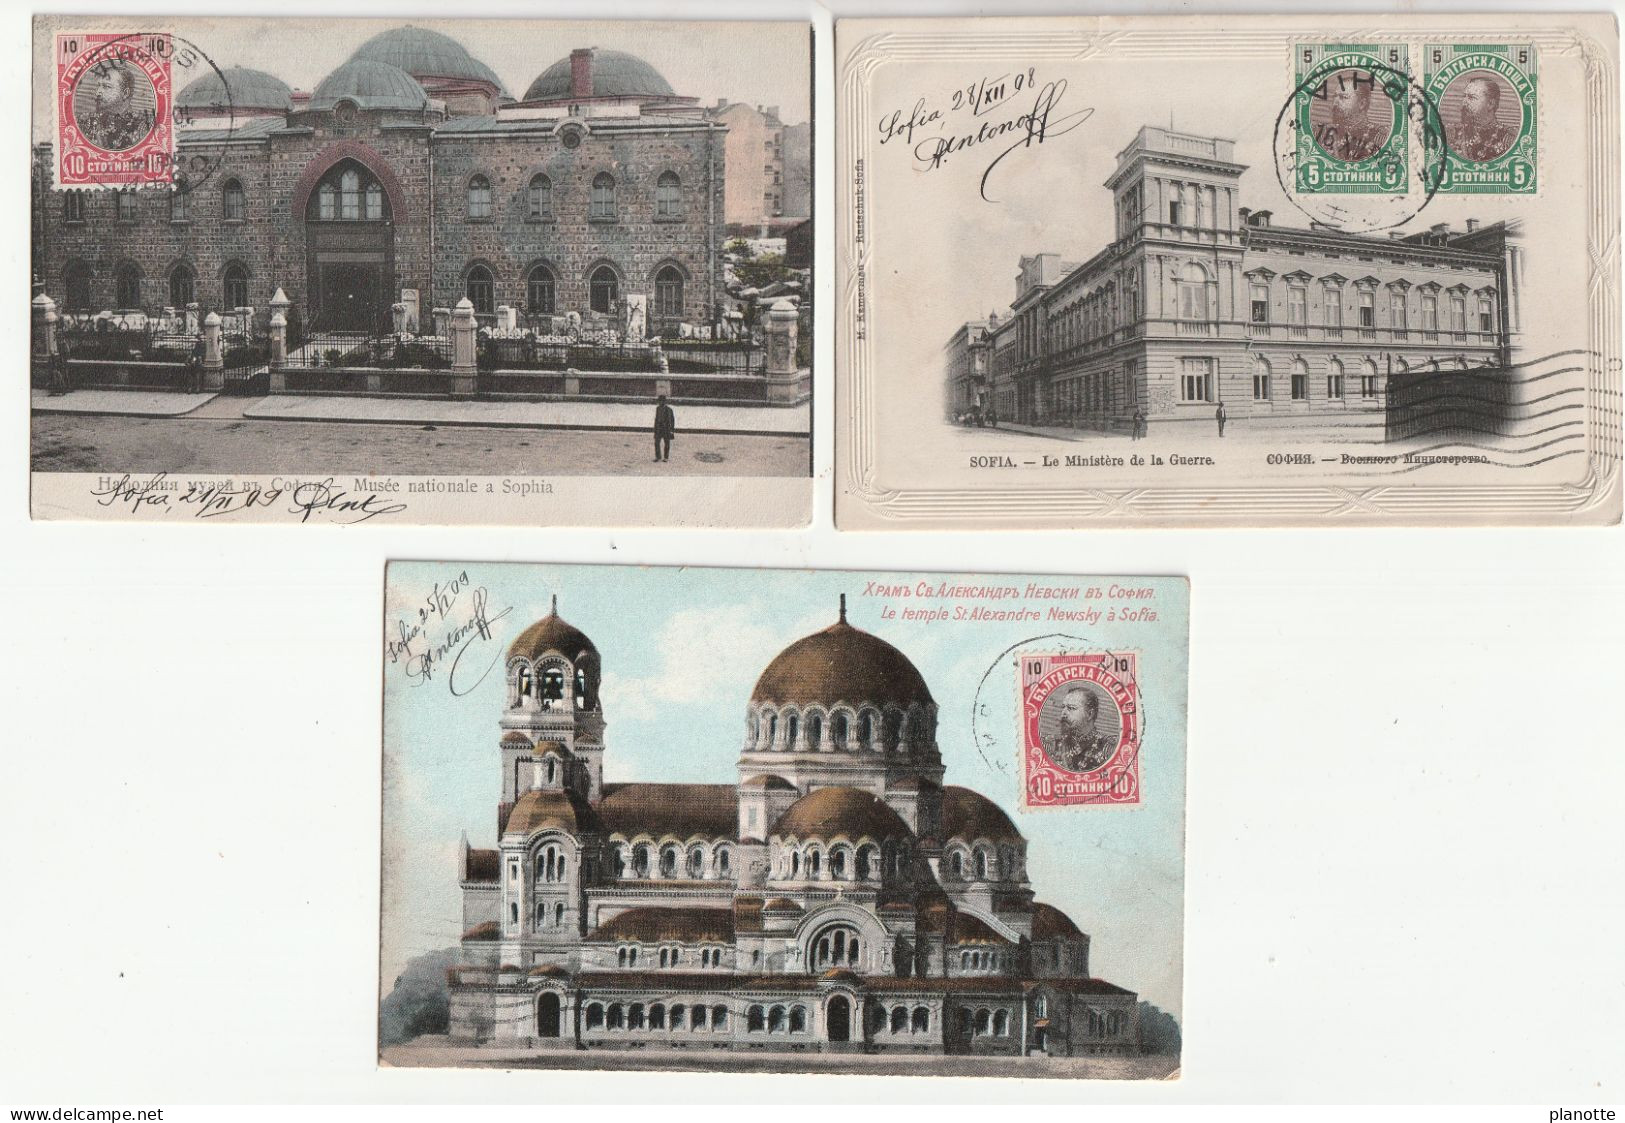 BULGARIA -  SOFIA - 3 Old Pc 1900/10s - Ministere De La Guerre / Musée Nationale / Temple St Alexandre Newsky - Bulgarie